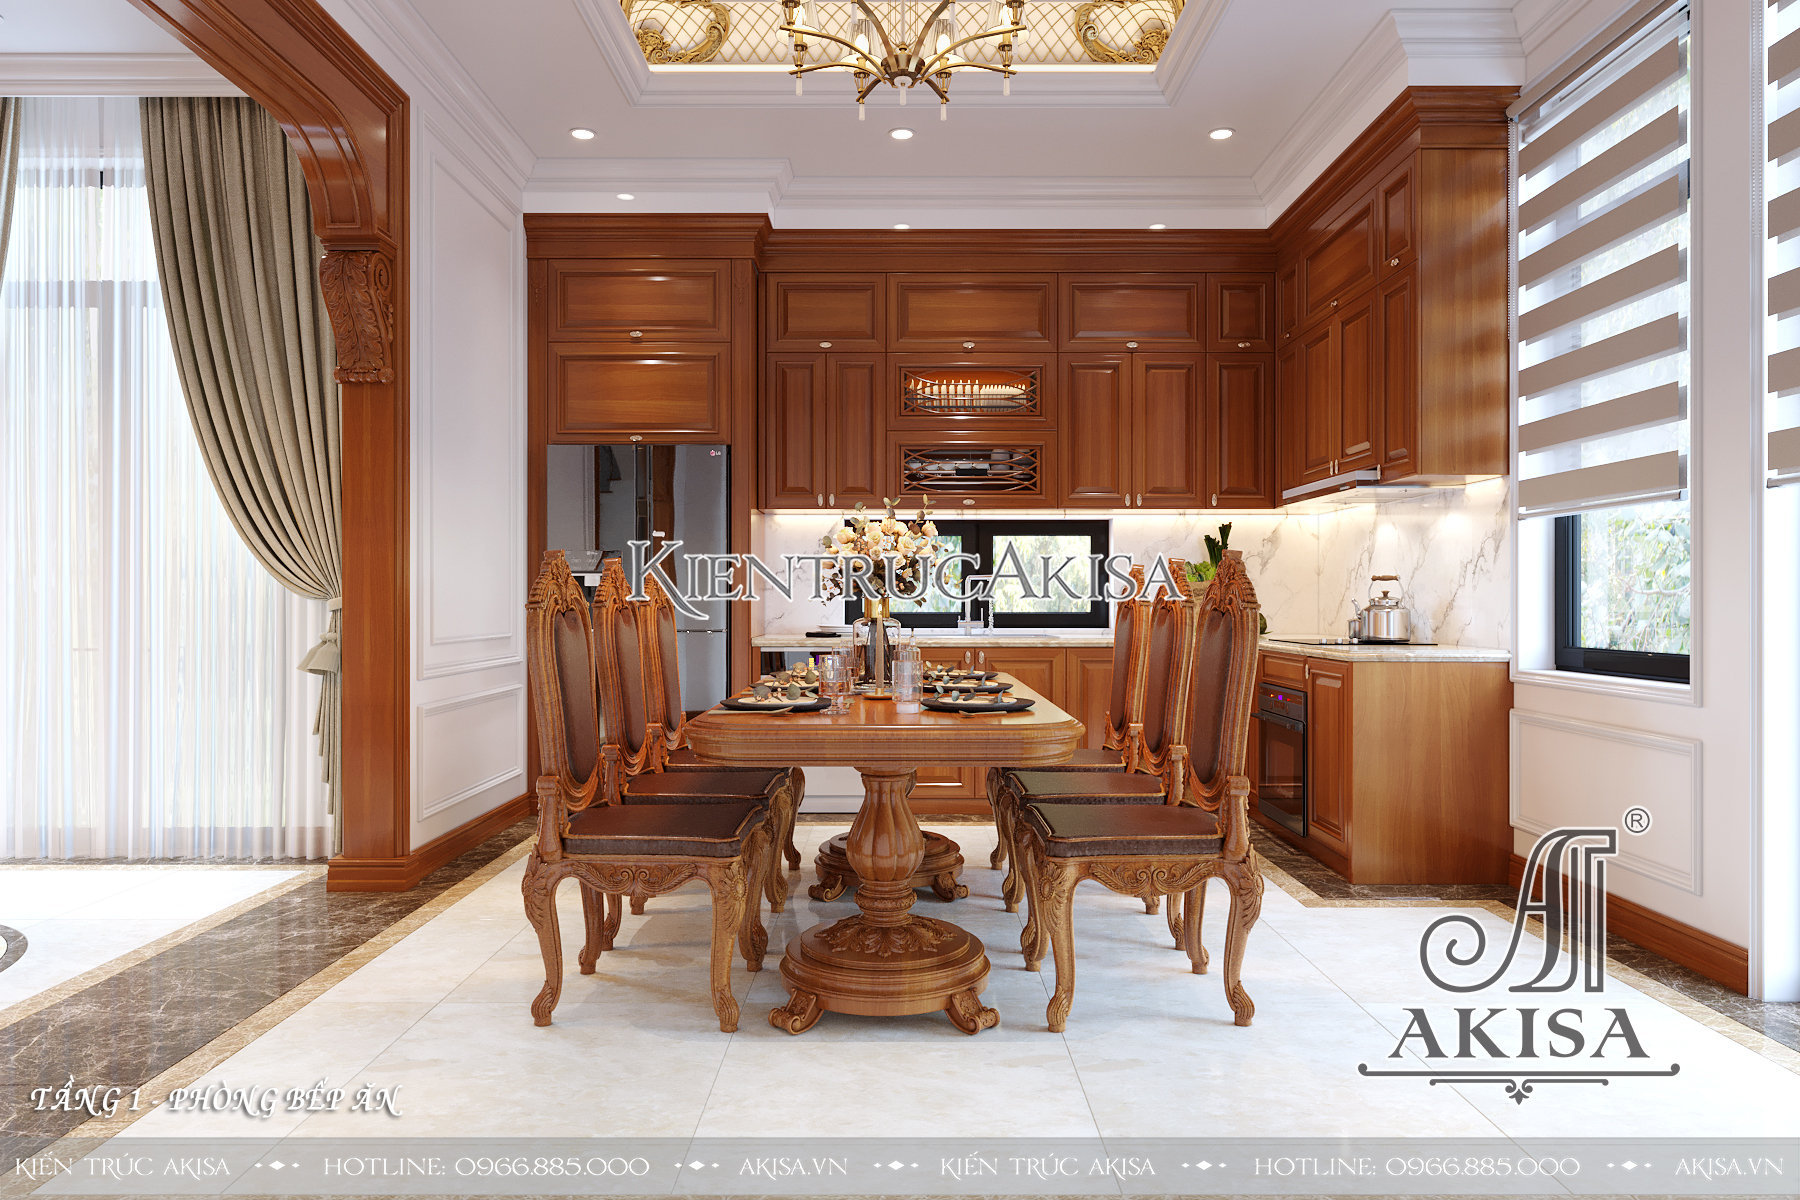 Mẫu nội thất nhà đẹp 2 tầng phong cách tân cổ điển kết hợp hiện đại - Phòng bếp ăn